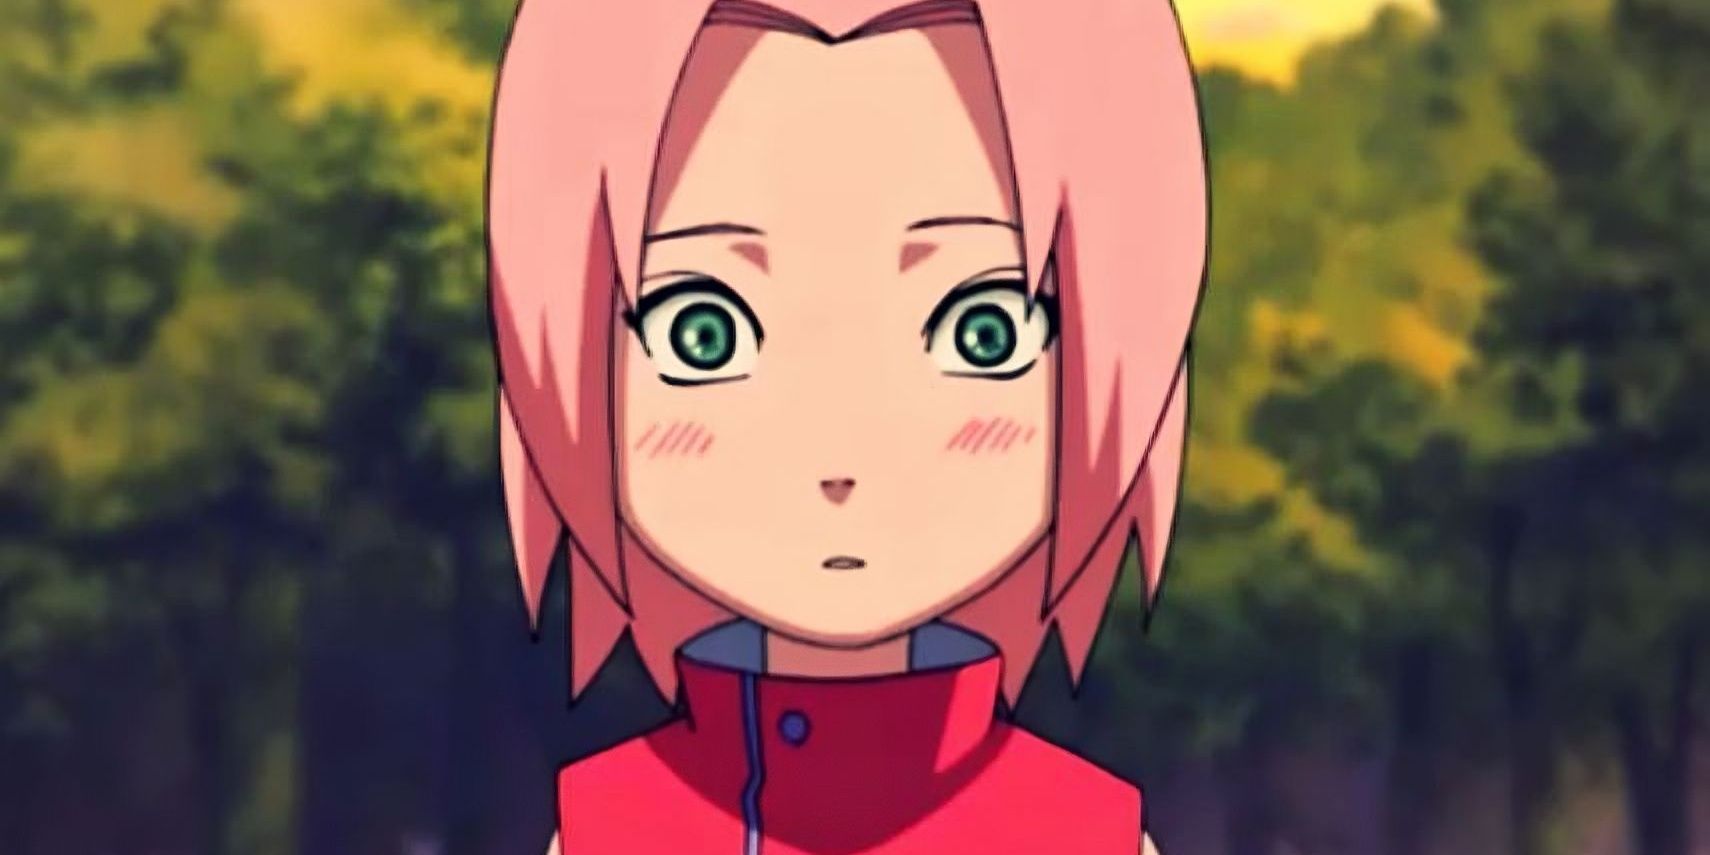 Young Sakura Haruno blushing in Naruto anime